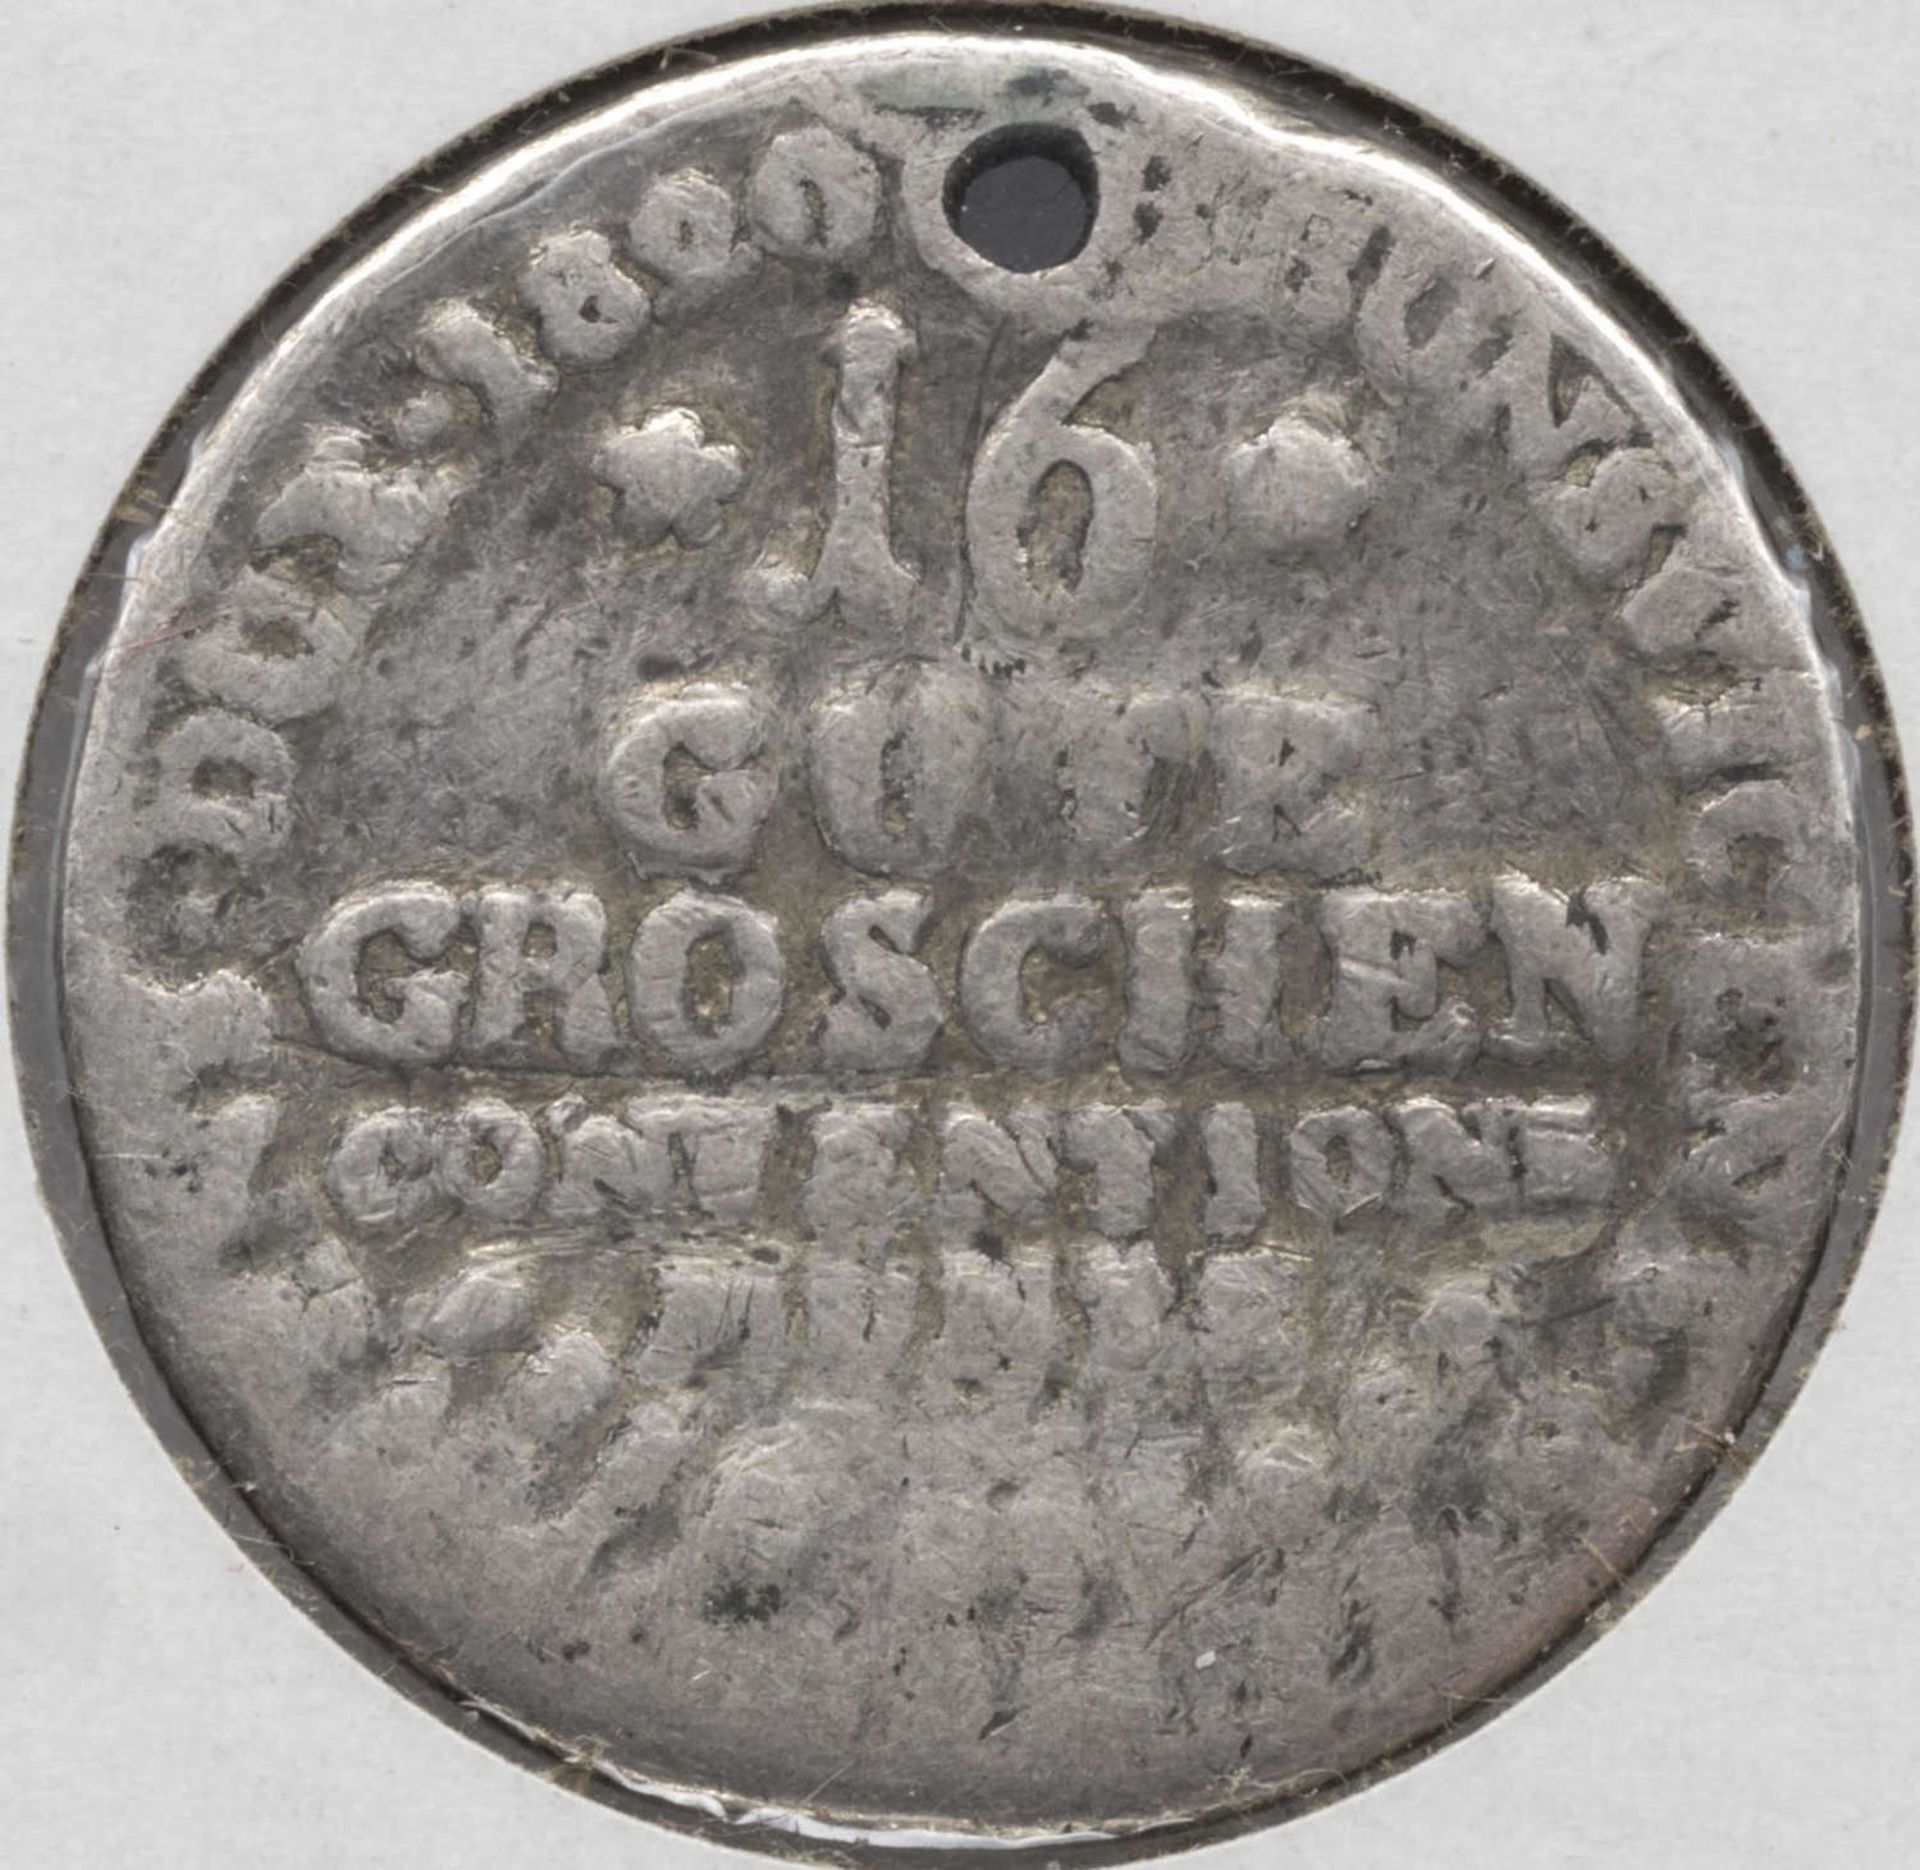 Hannover 1920, 16 Gute Groschen, Silber. Prägeschwach. Qualität: s.